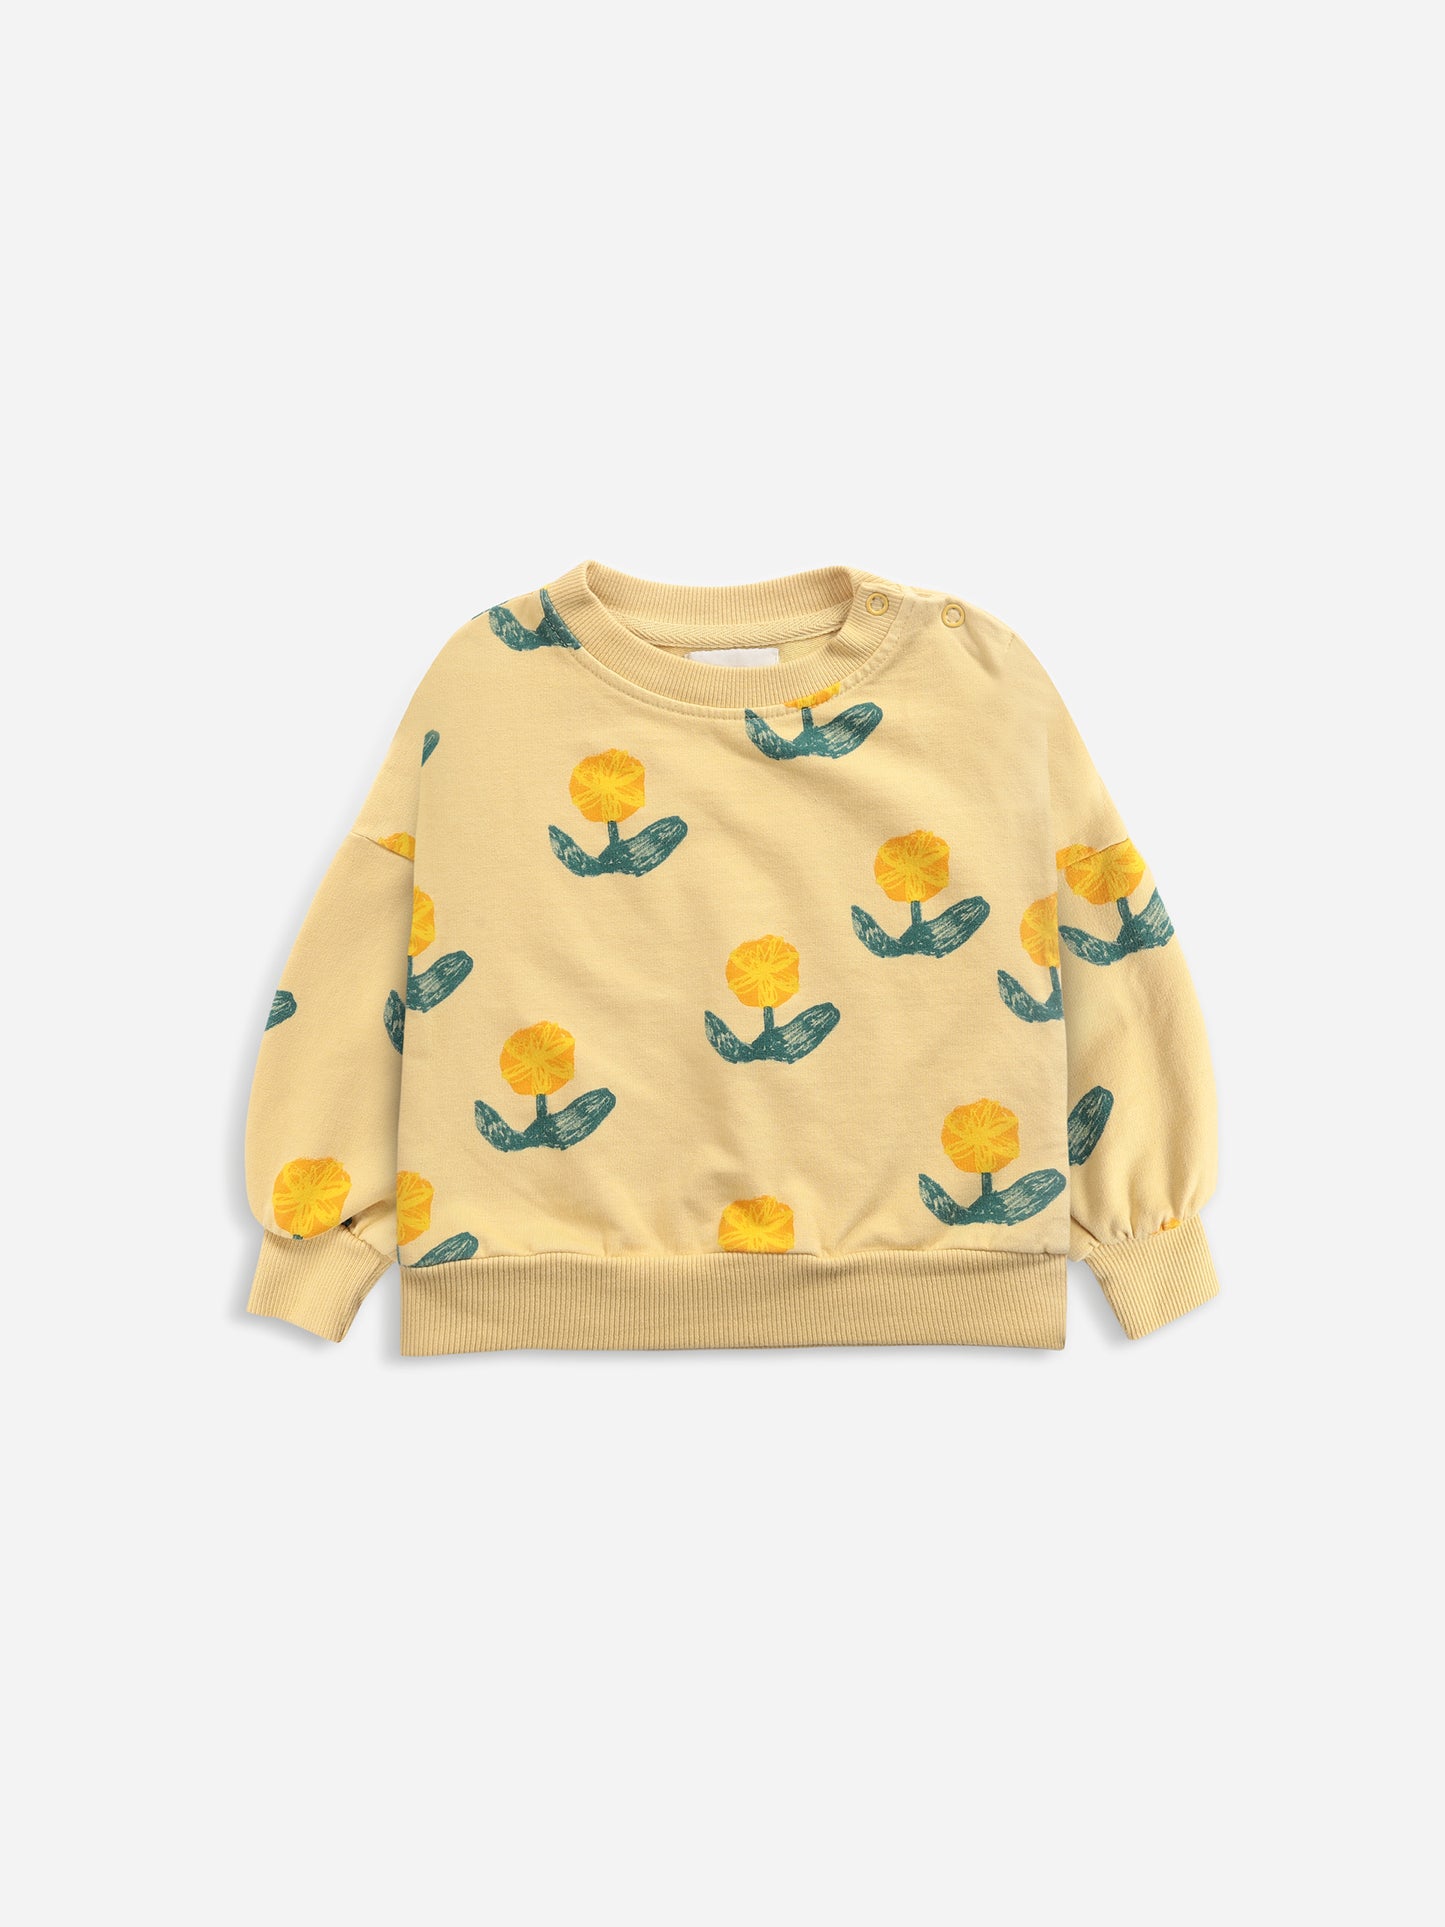 Wallflowers All Over Sweatshirt